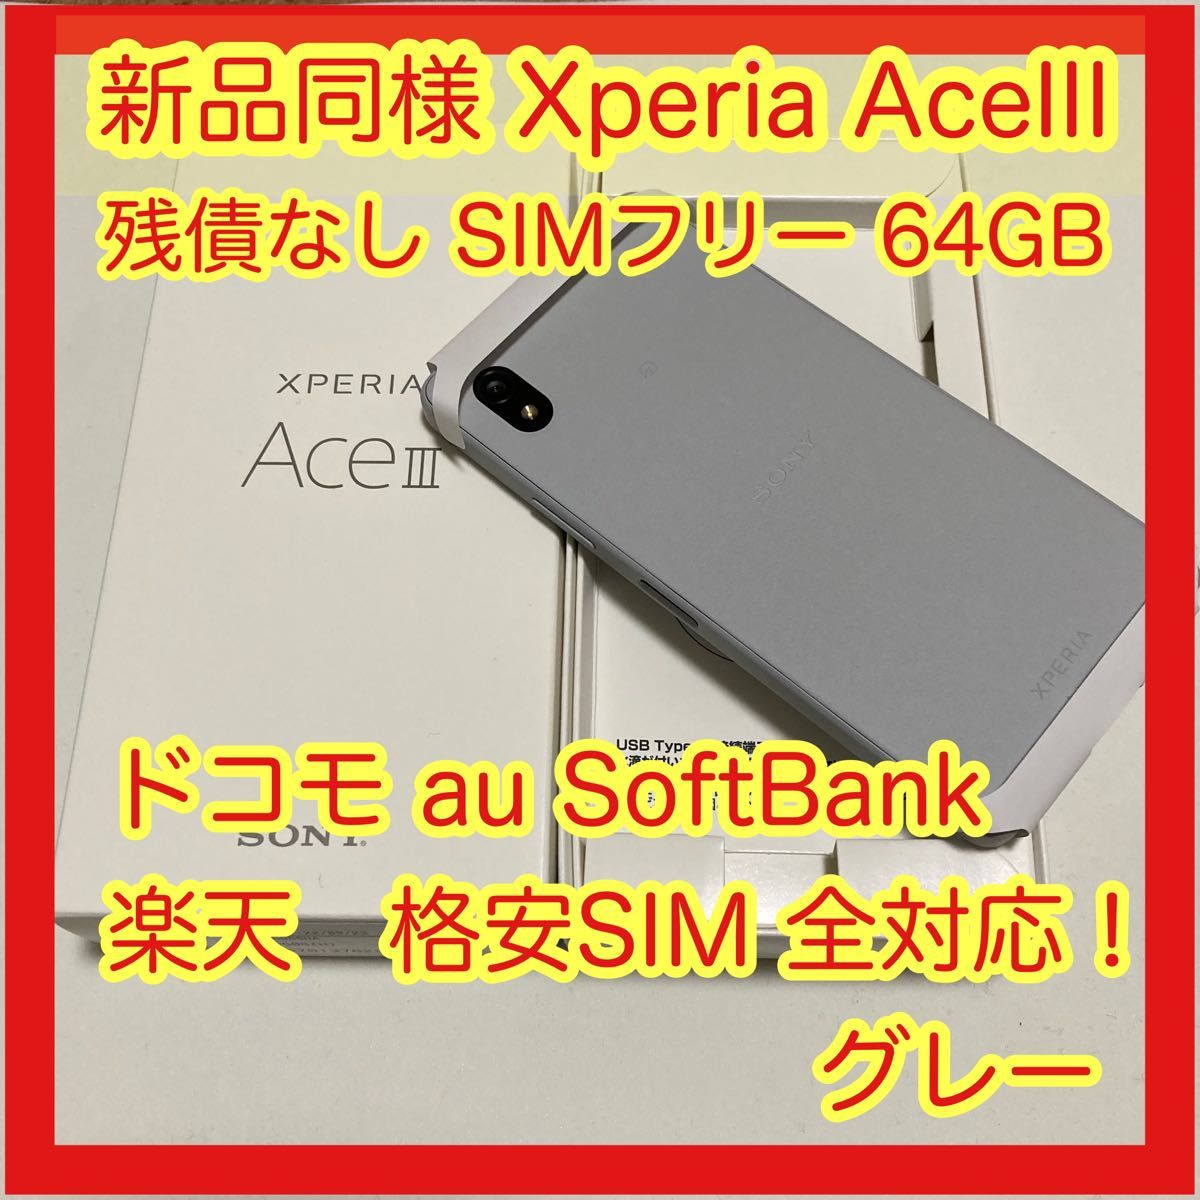 激安通販の Xperia Ace III グレー 64GB SIMフリー ad-naturam.fr